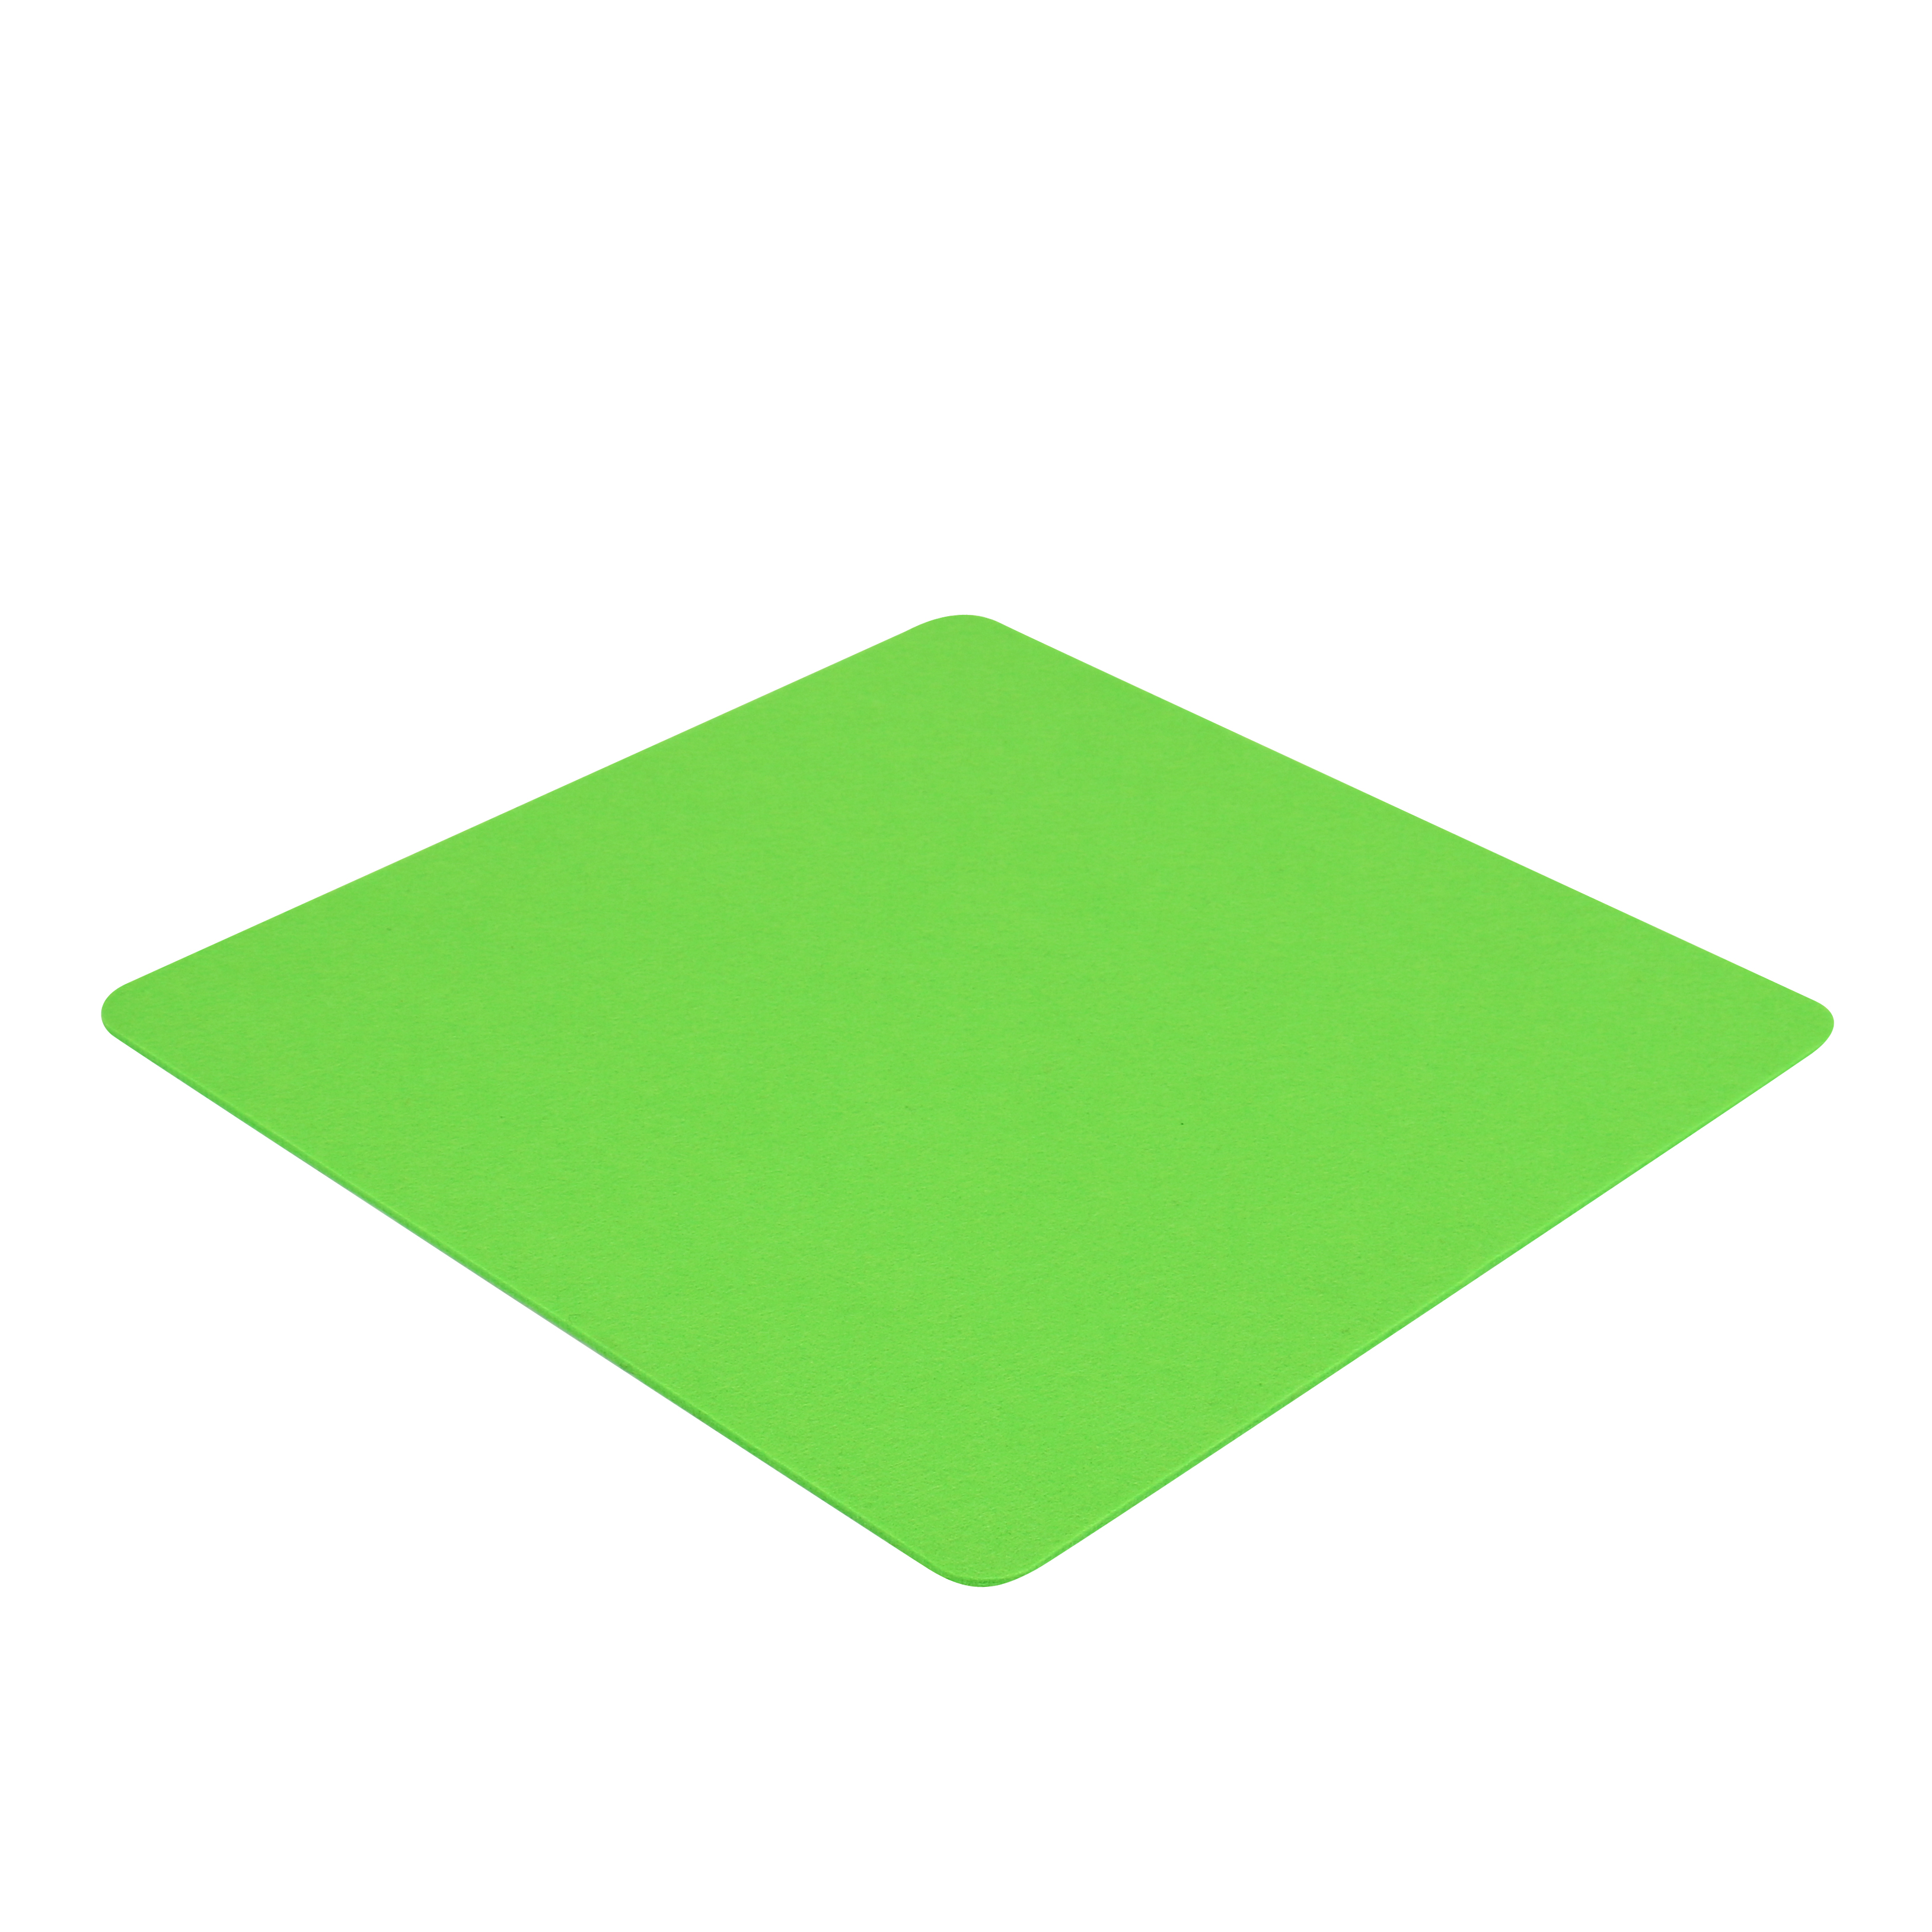 für cm - x Cube 7EVEN FIlzauflage 40 4mm Auflage Hocker (Green) z.B. Einseitig Apfel-Grün Filz 40